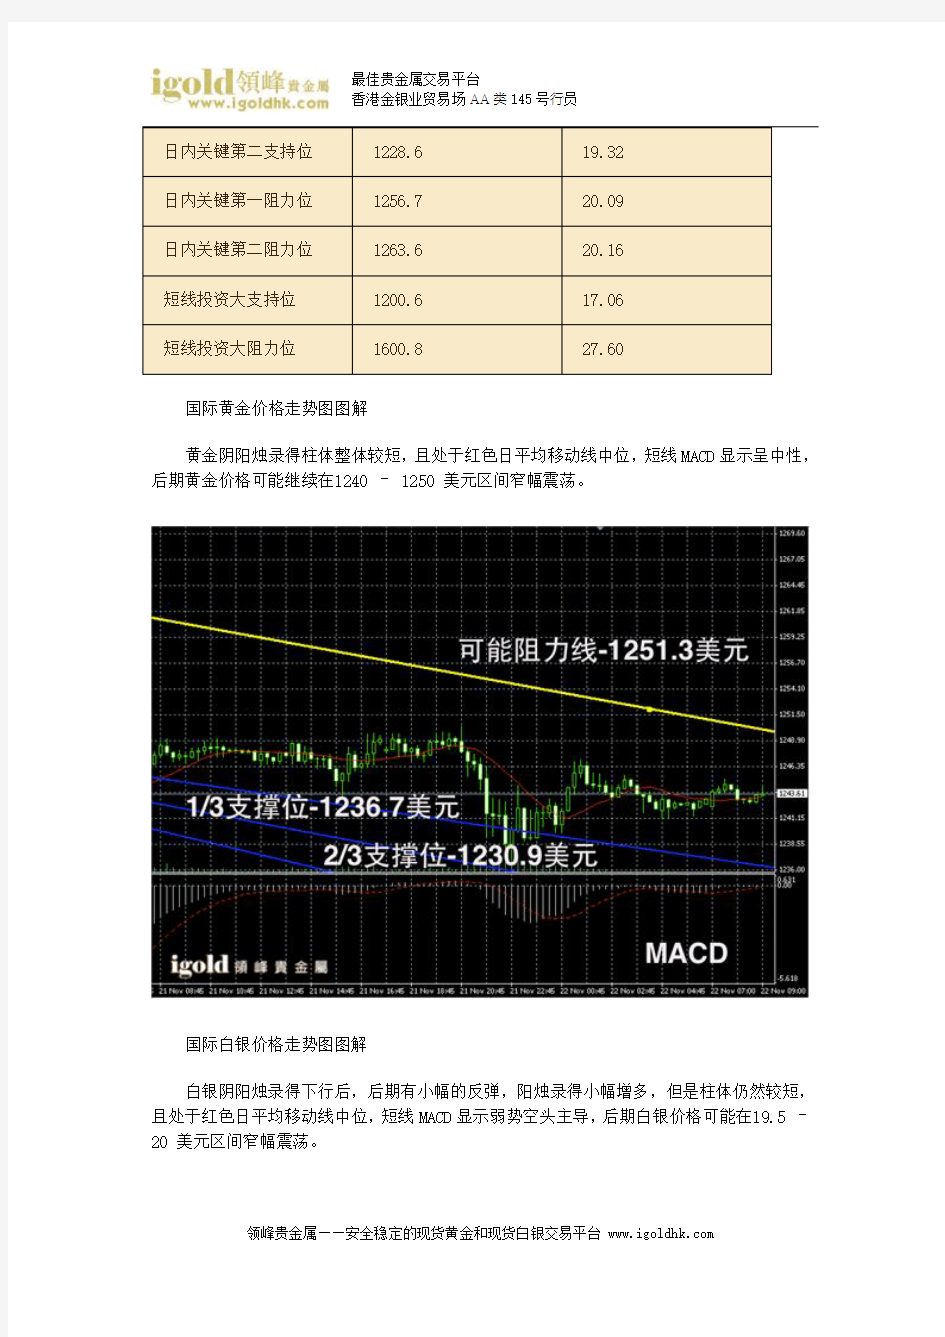 【贵金属交易】领峰贵金属 22-11-2013 早评 美数据向好 金银震荡偏离